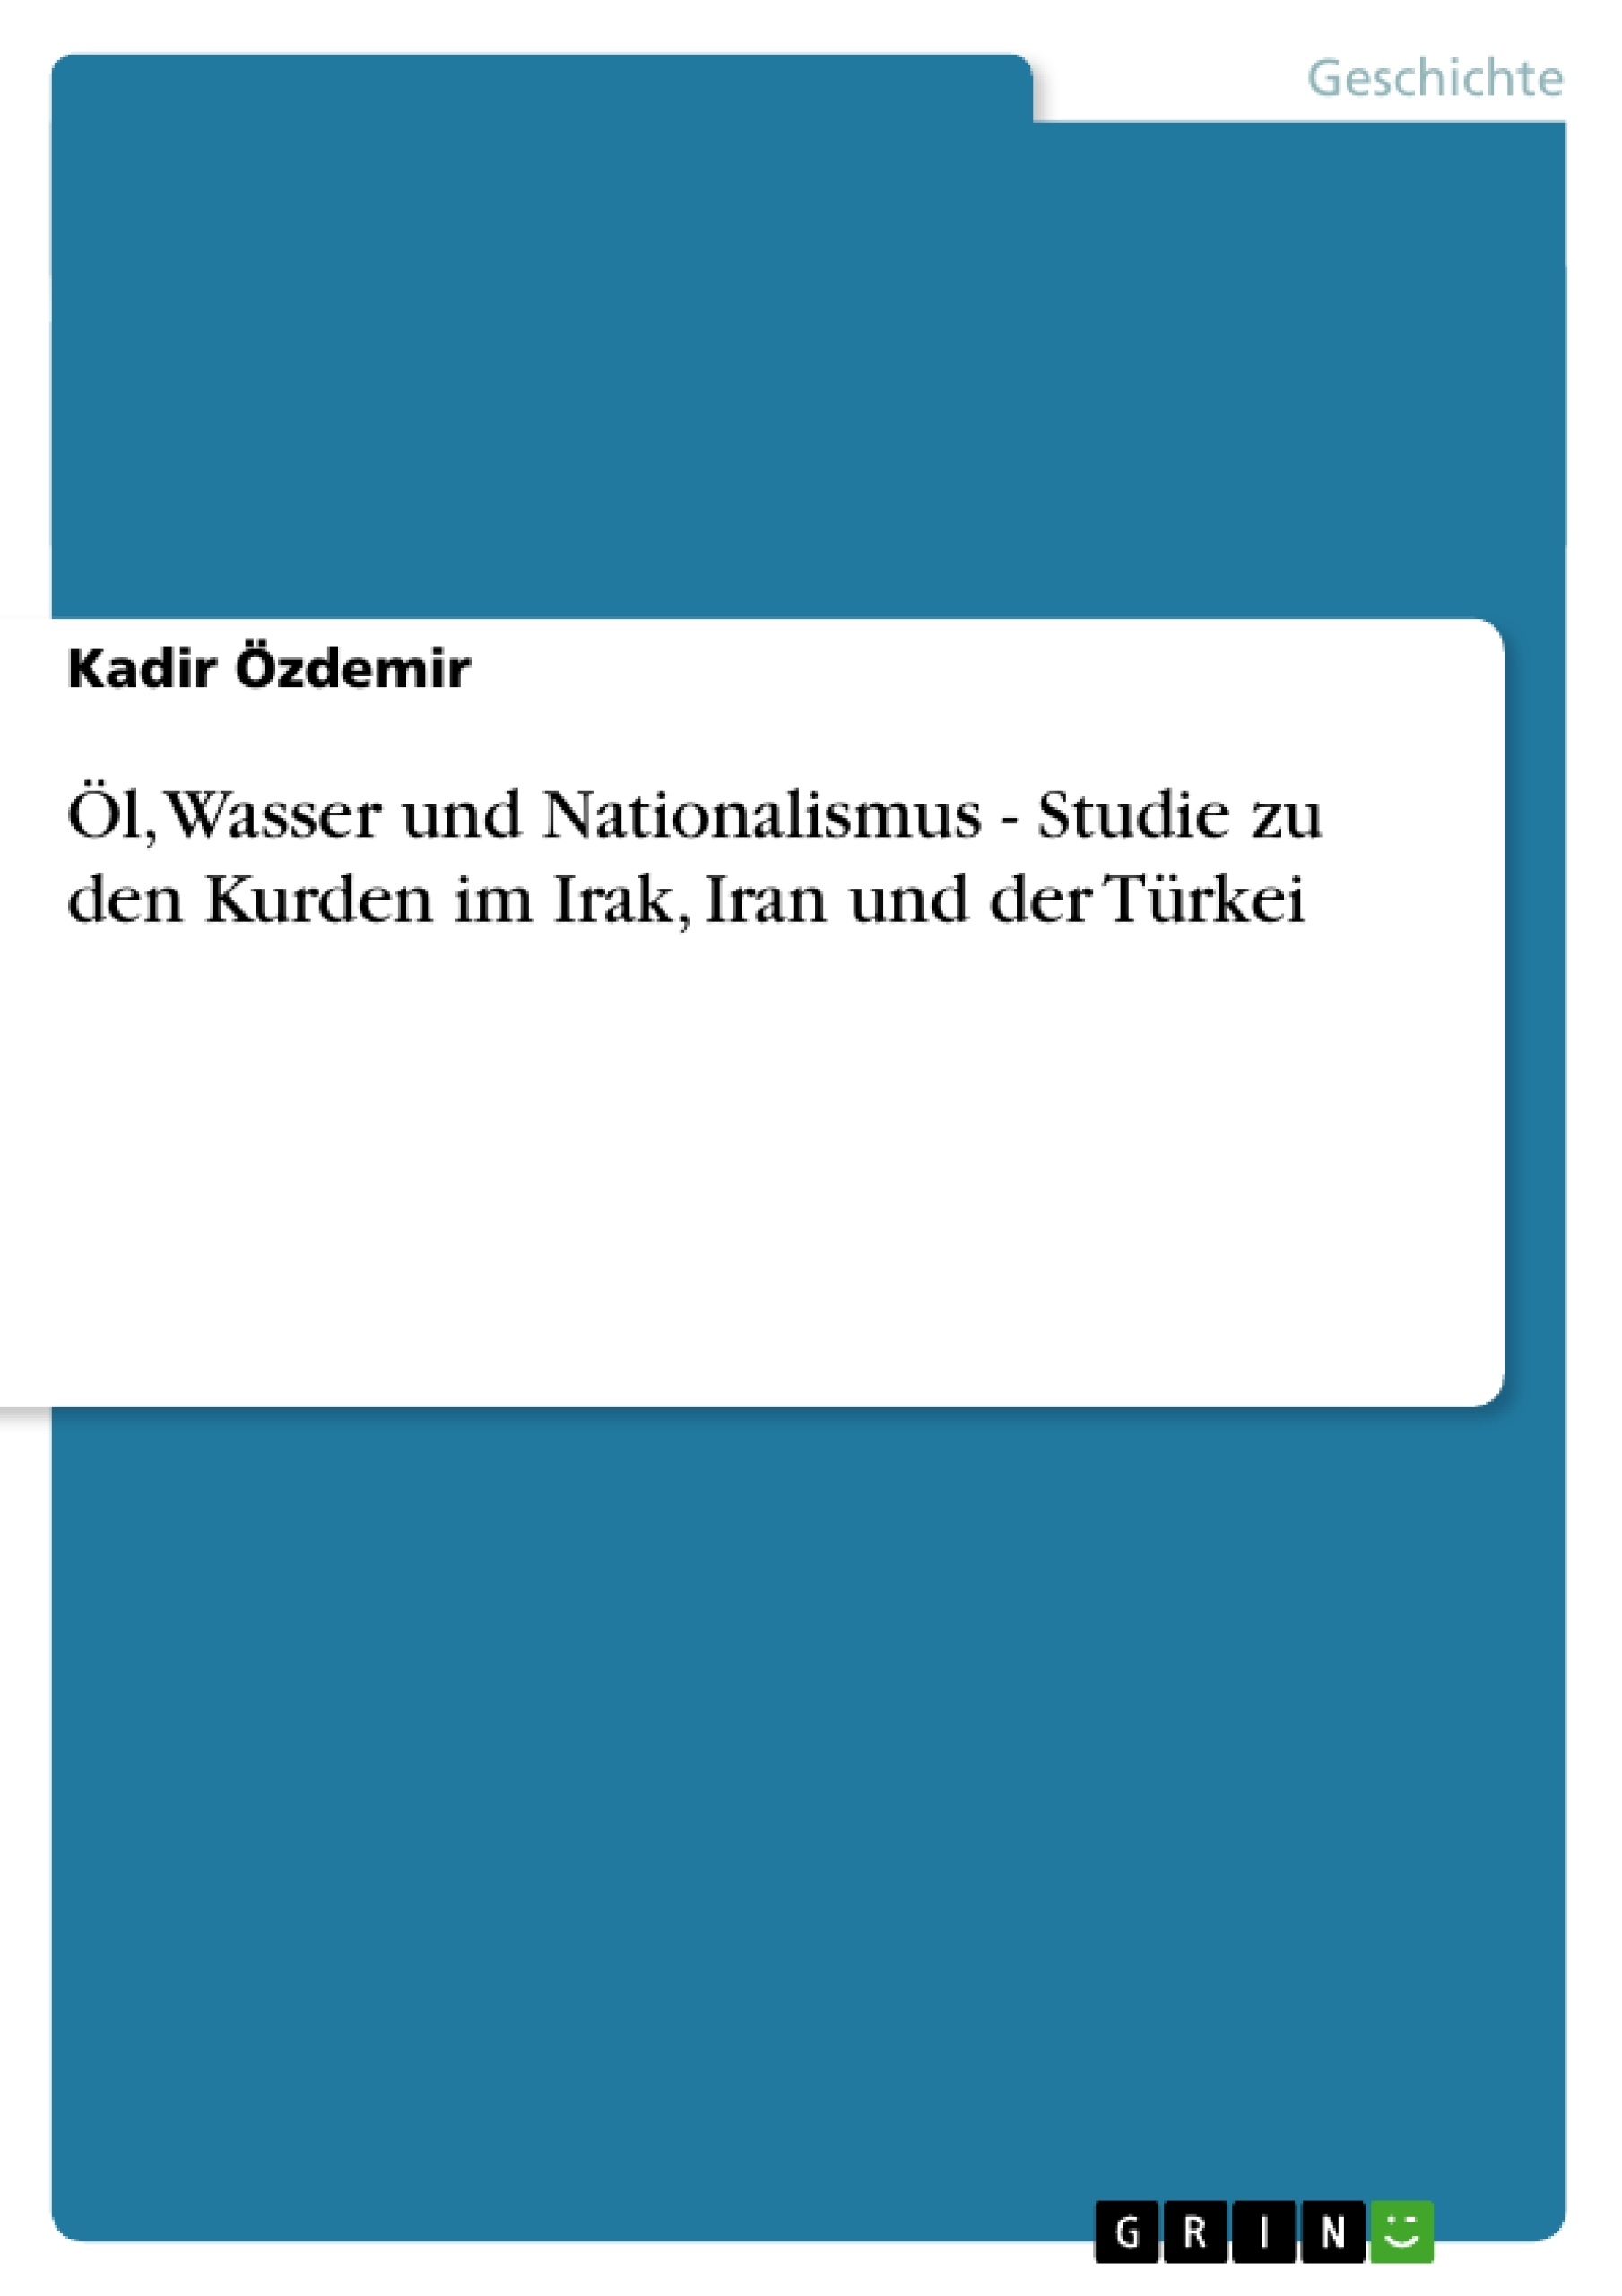 Titre: Öl, Wasser und Nationalismus - Studie zu den Kurden im Irak, Iran und der Türkei